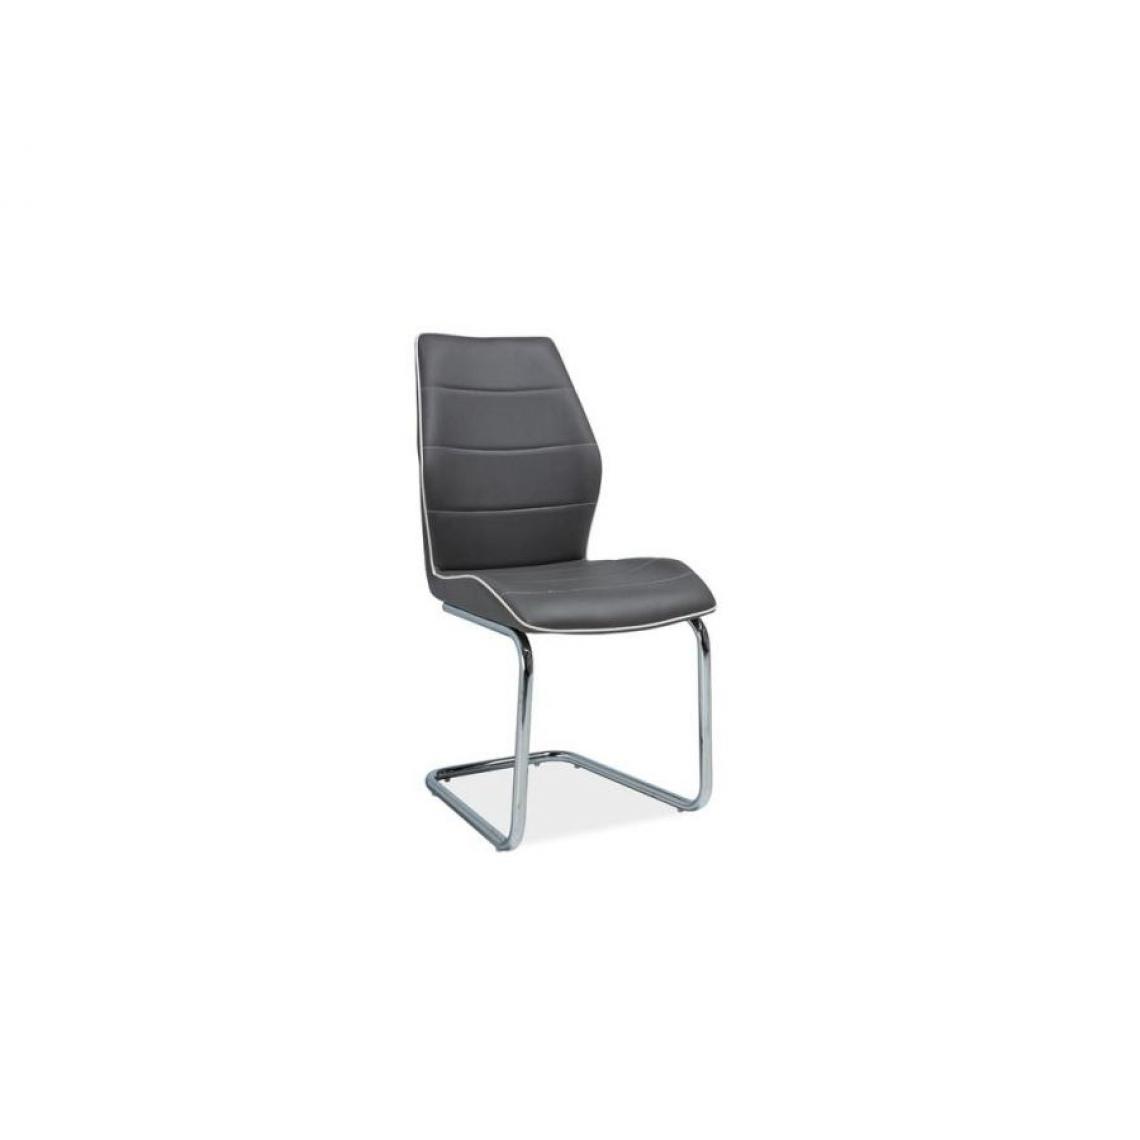 Hucoco - HINT | Chaise moderne pour salle à manger et salon | Dimensions 99x42x43cm | Rembourrage cuir écologique doux | Chaise bureau - Gris - Chaises